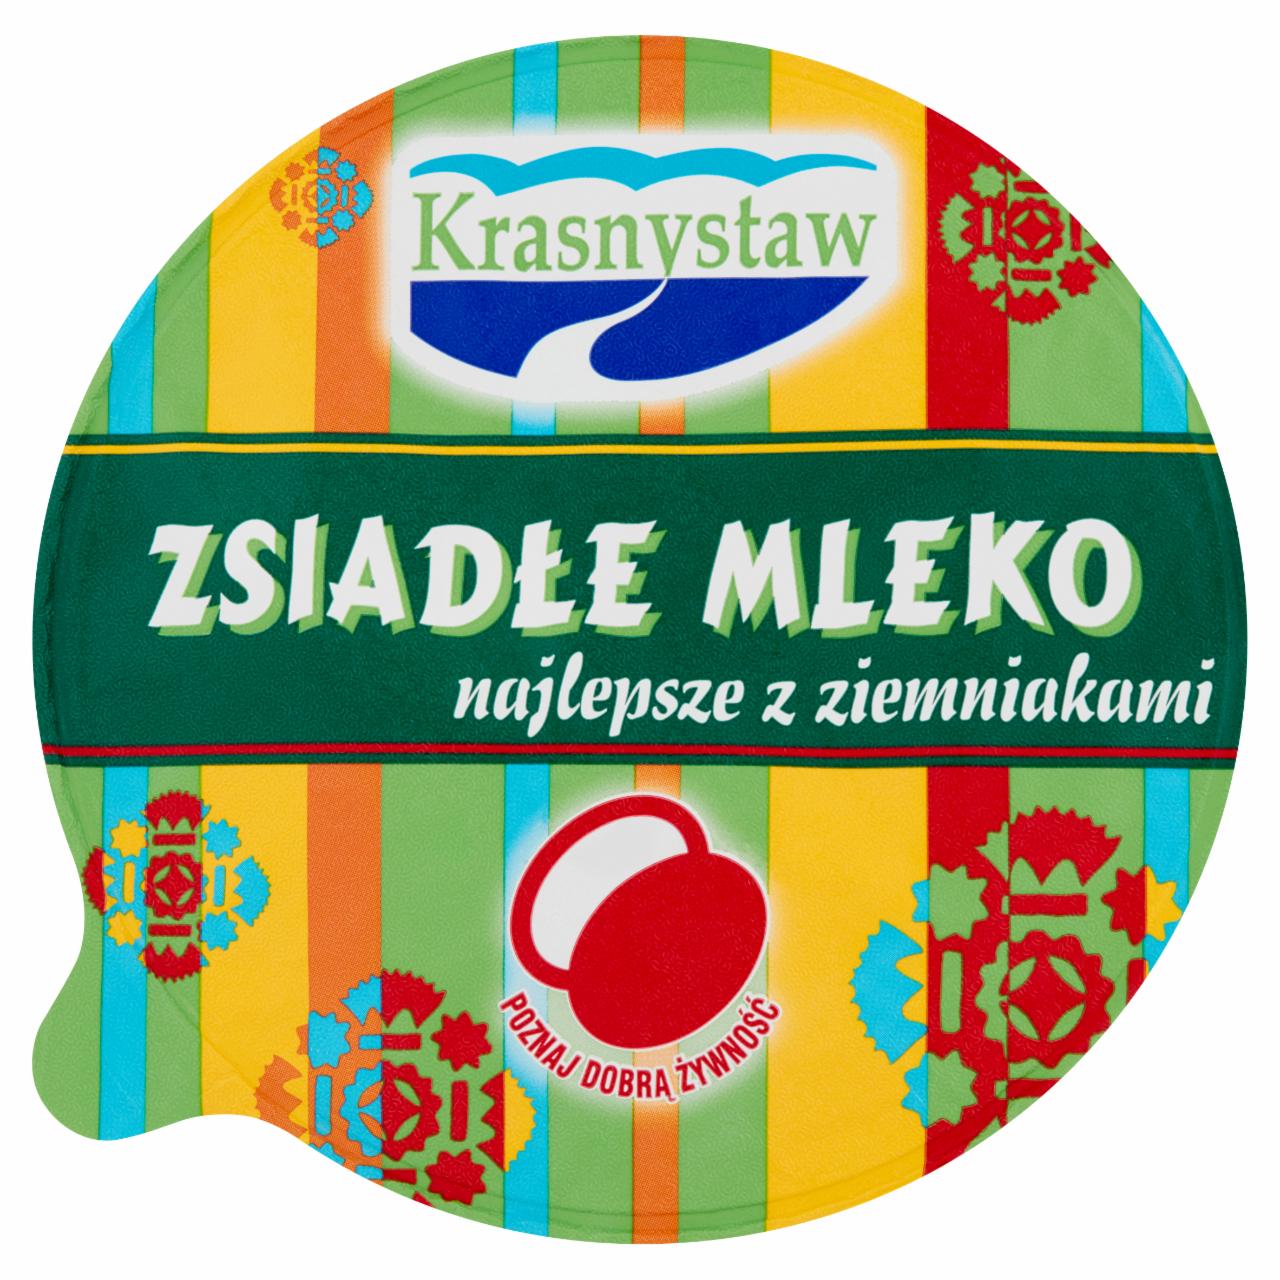 Zdjęcia - Zsiadłe mleko Krasnystaw